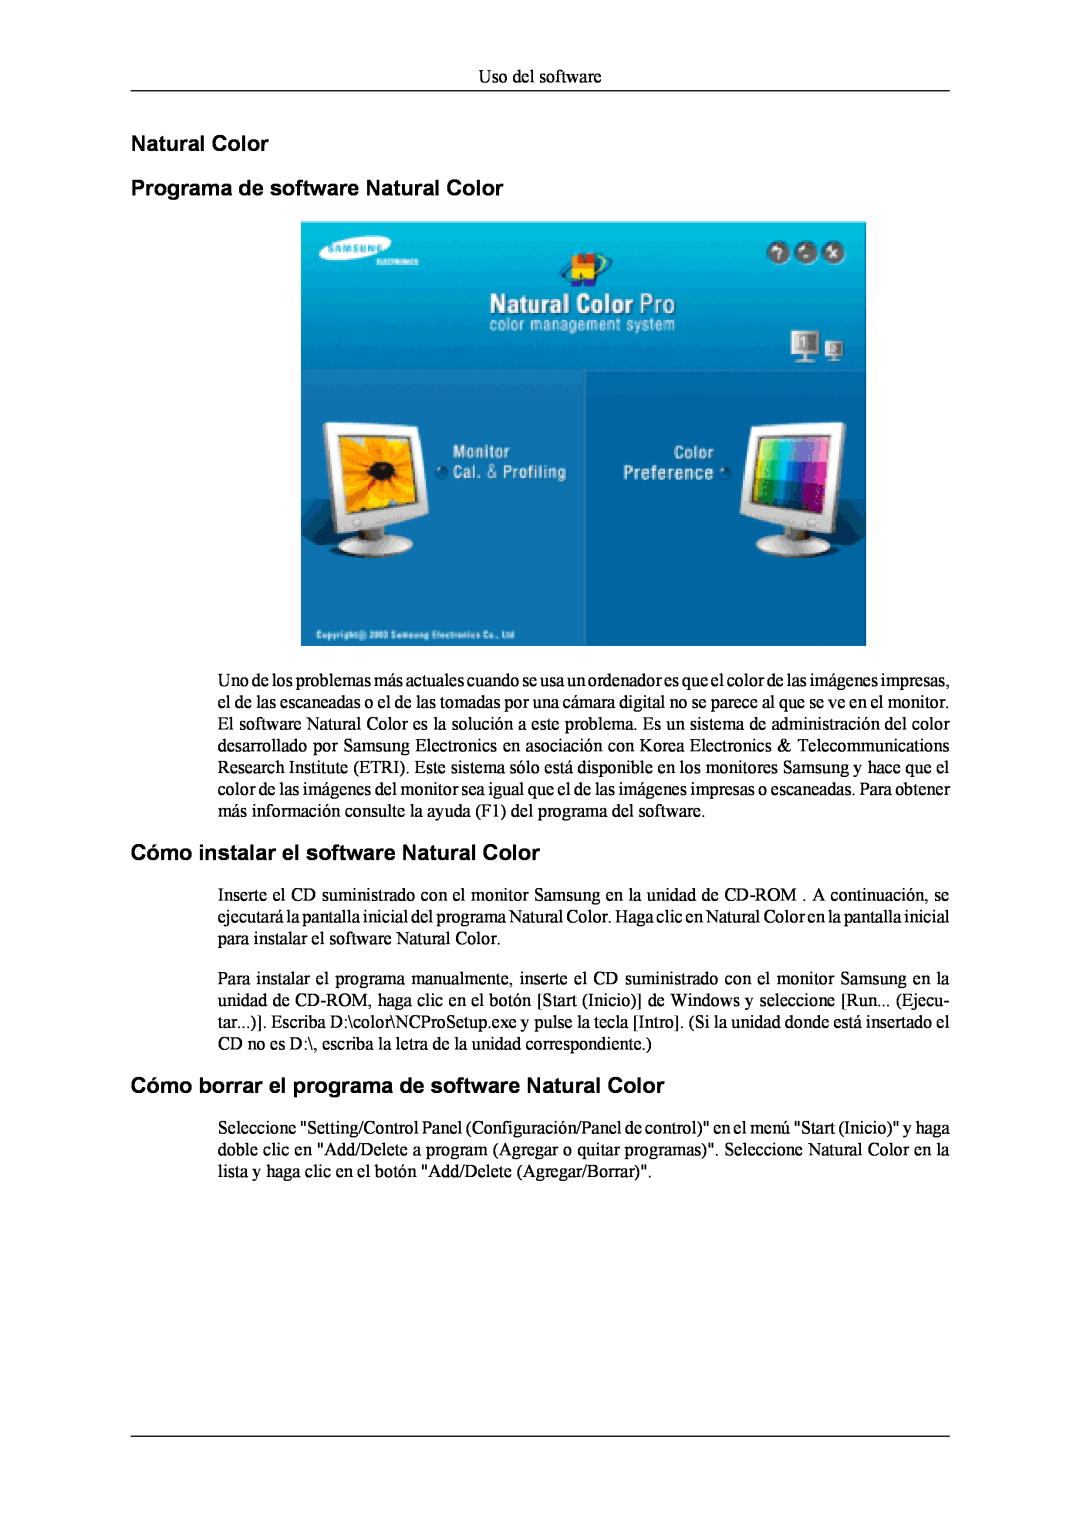 Samsung LS19CFEKF/EN manual Natural Color Programa de software Natural Color, Cómo instalar el software Natural Color 